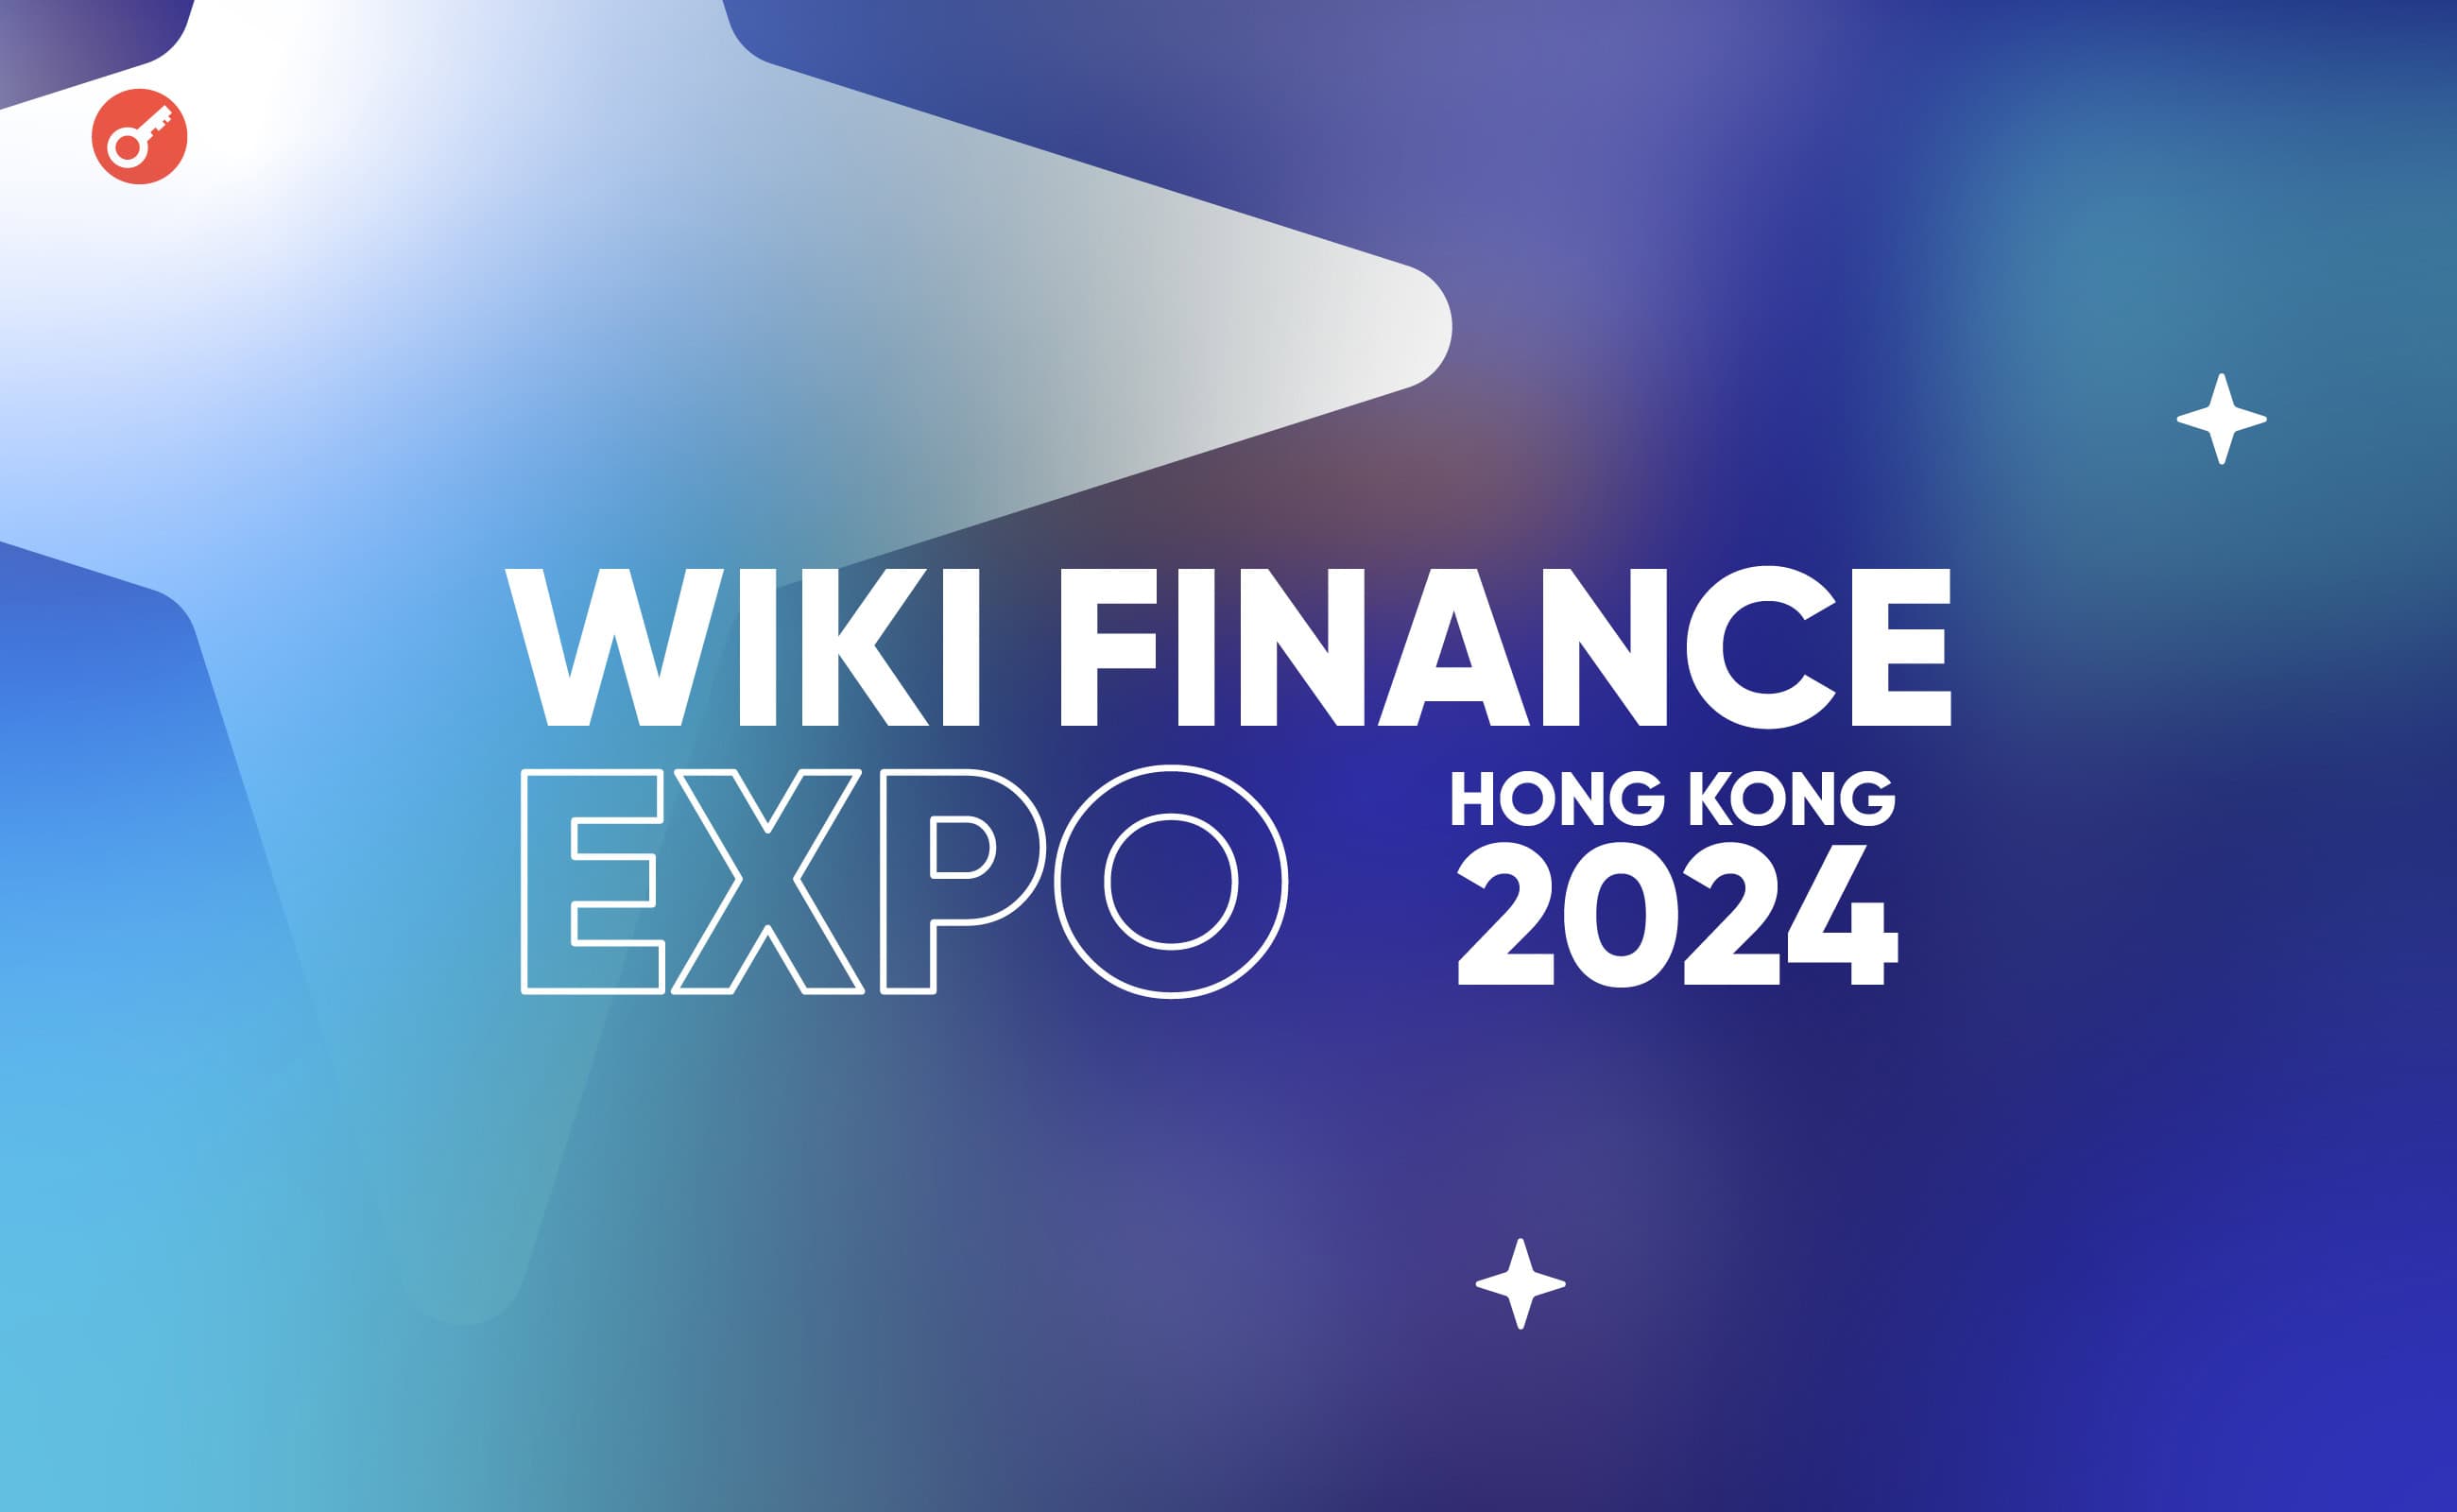 17 мая в Гонконге пройдет Wiki Finance Expo Hong Kong 2024. Заглавный коллаж новости.